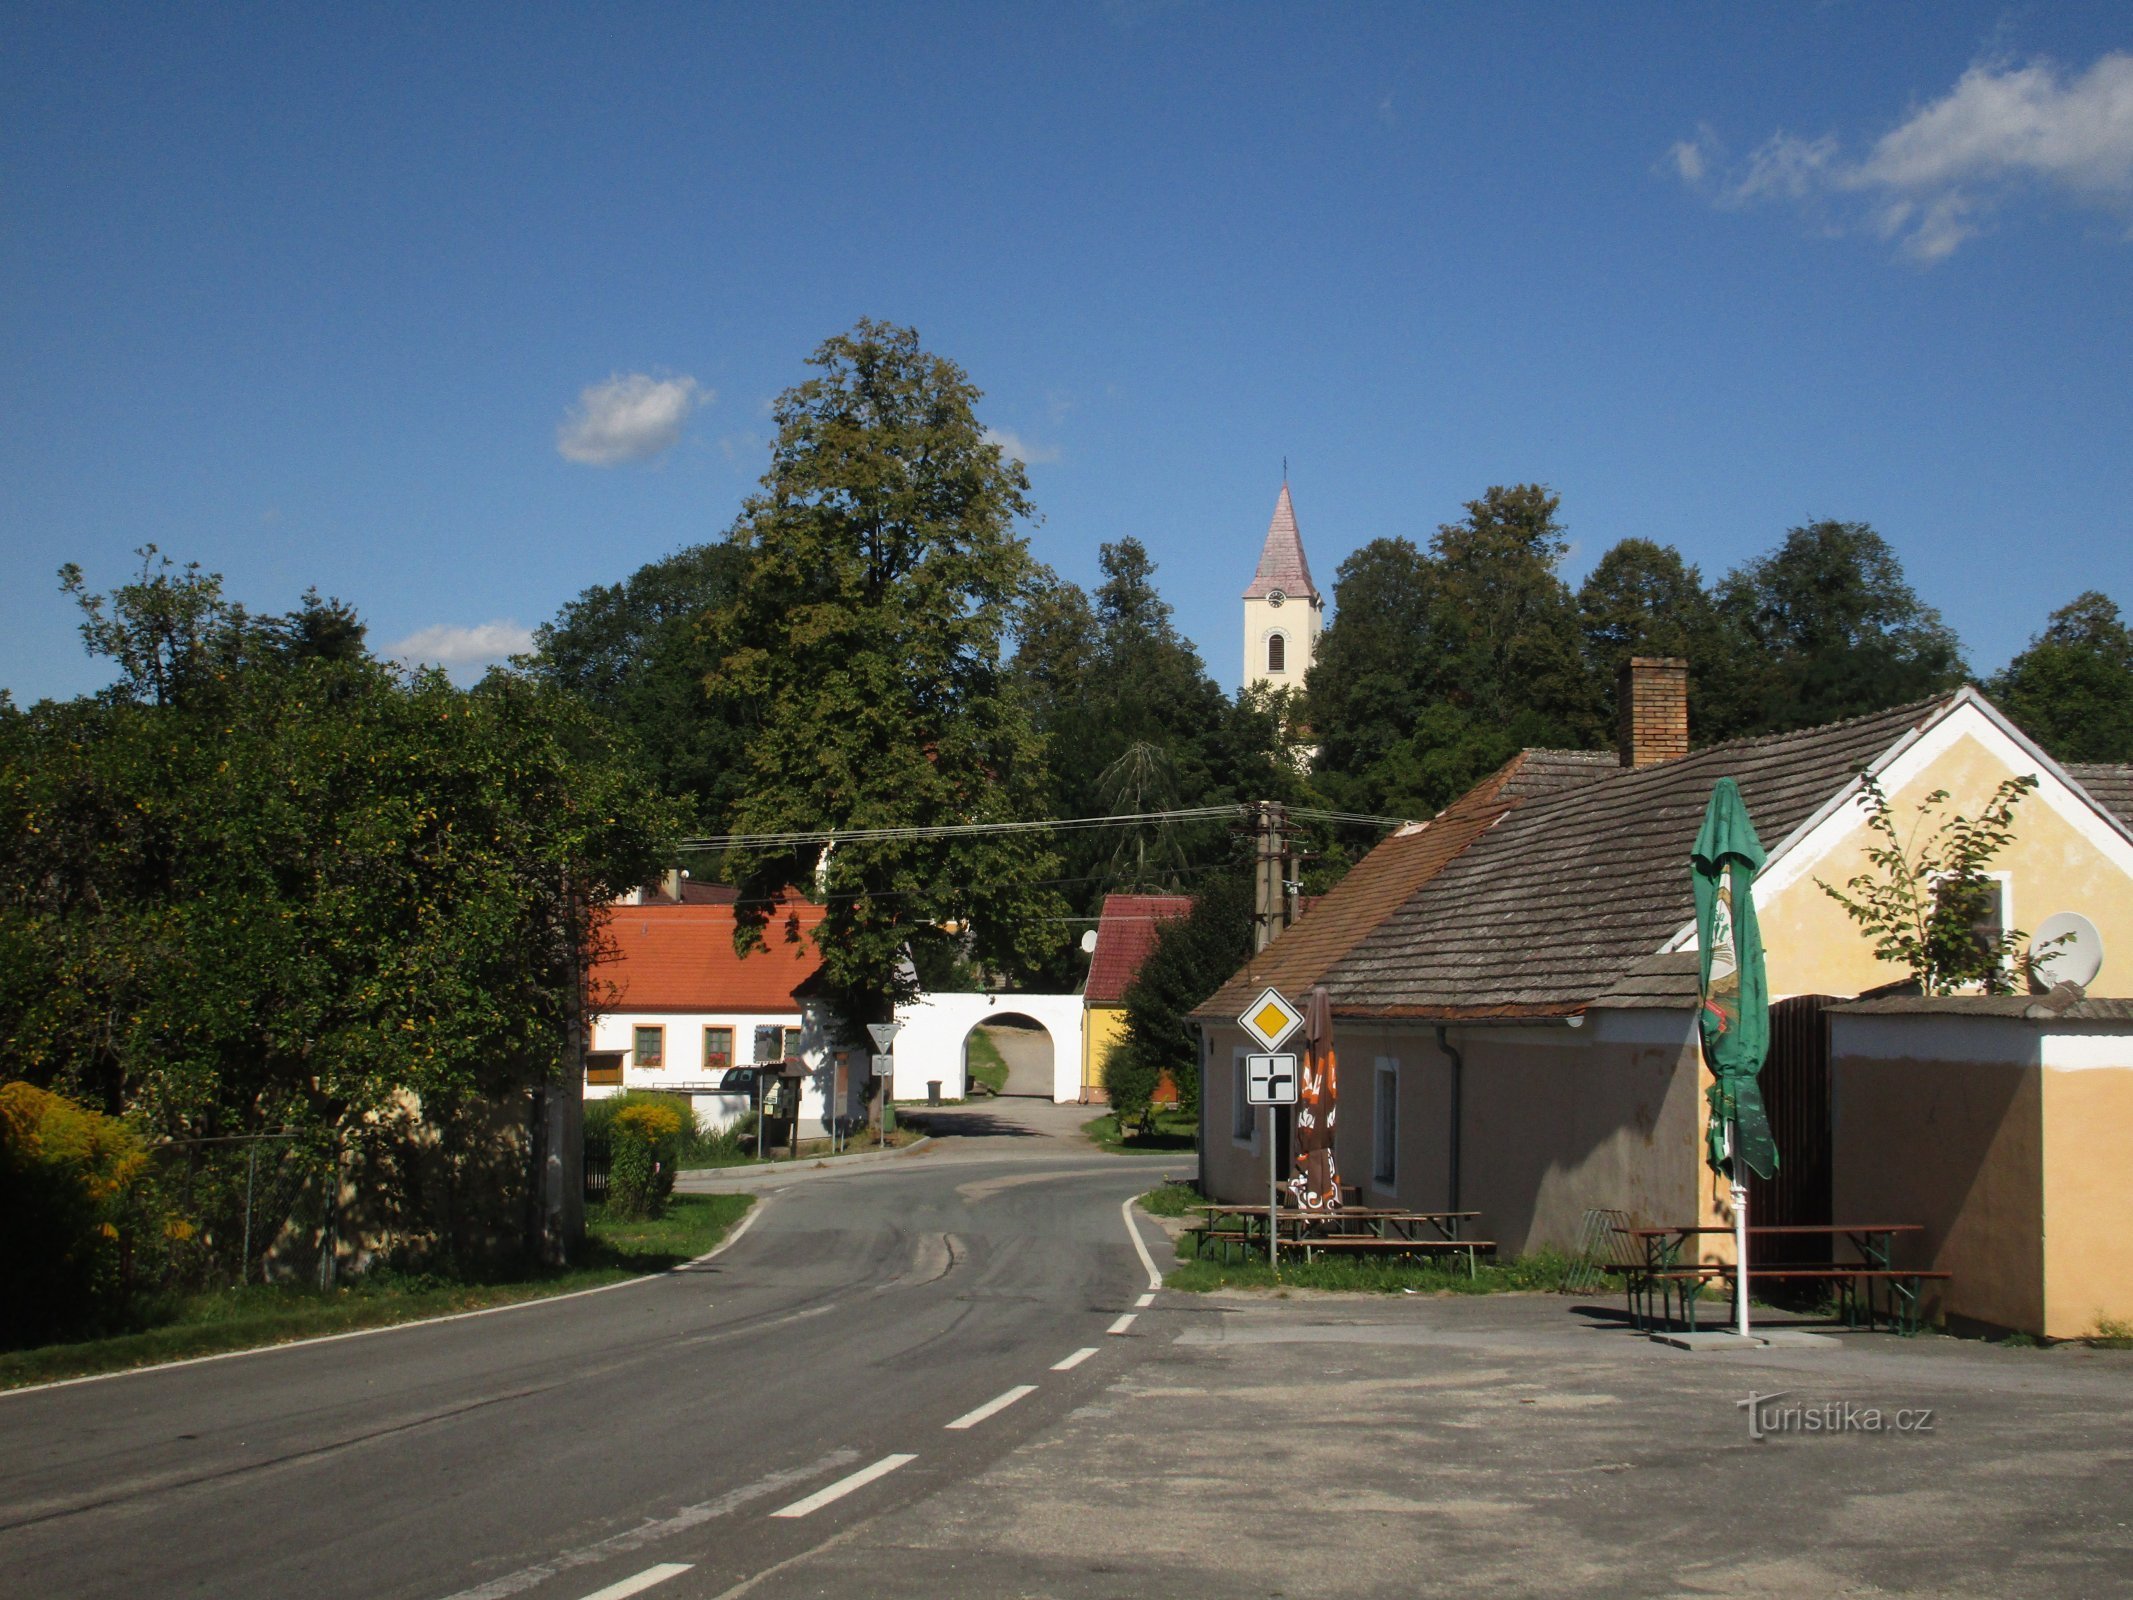 vista del paese dalla strada 153 proveniente da Chlum u Třeboň